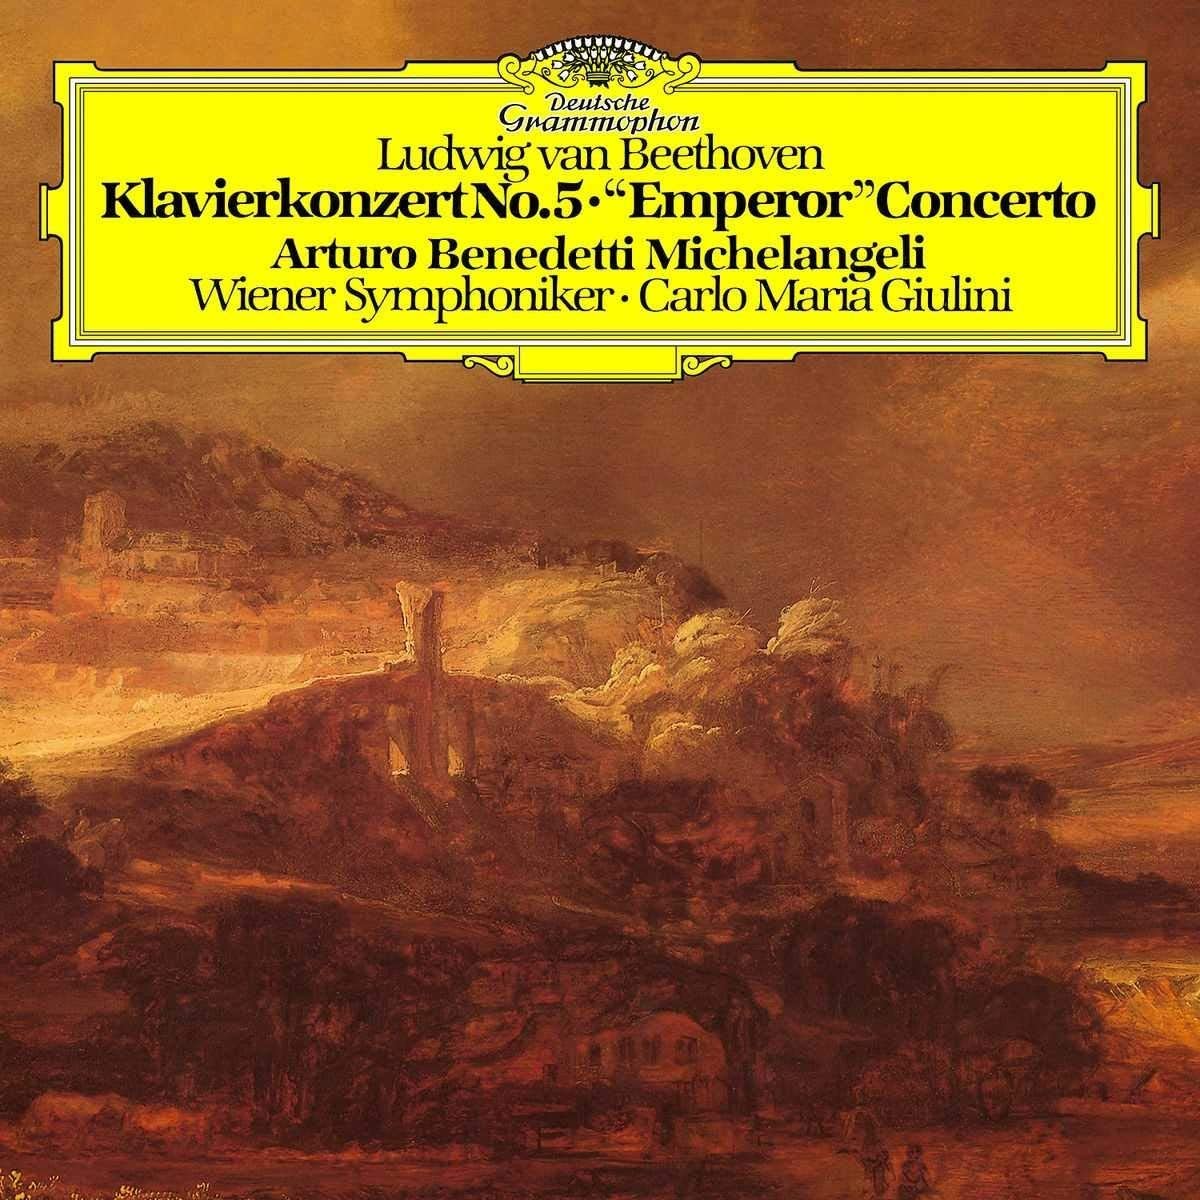 Klavierkonzert No. 5 Emperor Concerto – Vinyl | Ludwig van Beethoven, Arturo Benedetti Michelangeli, Wiener Symphoniker, Carlo Maria Giulini Arturo poza noua